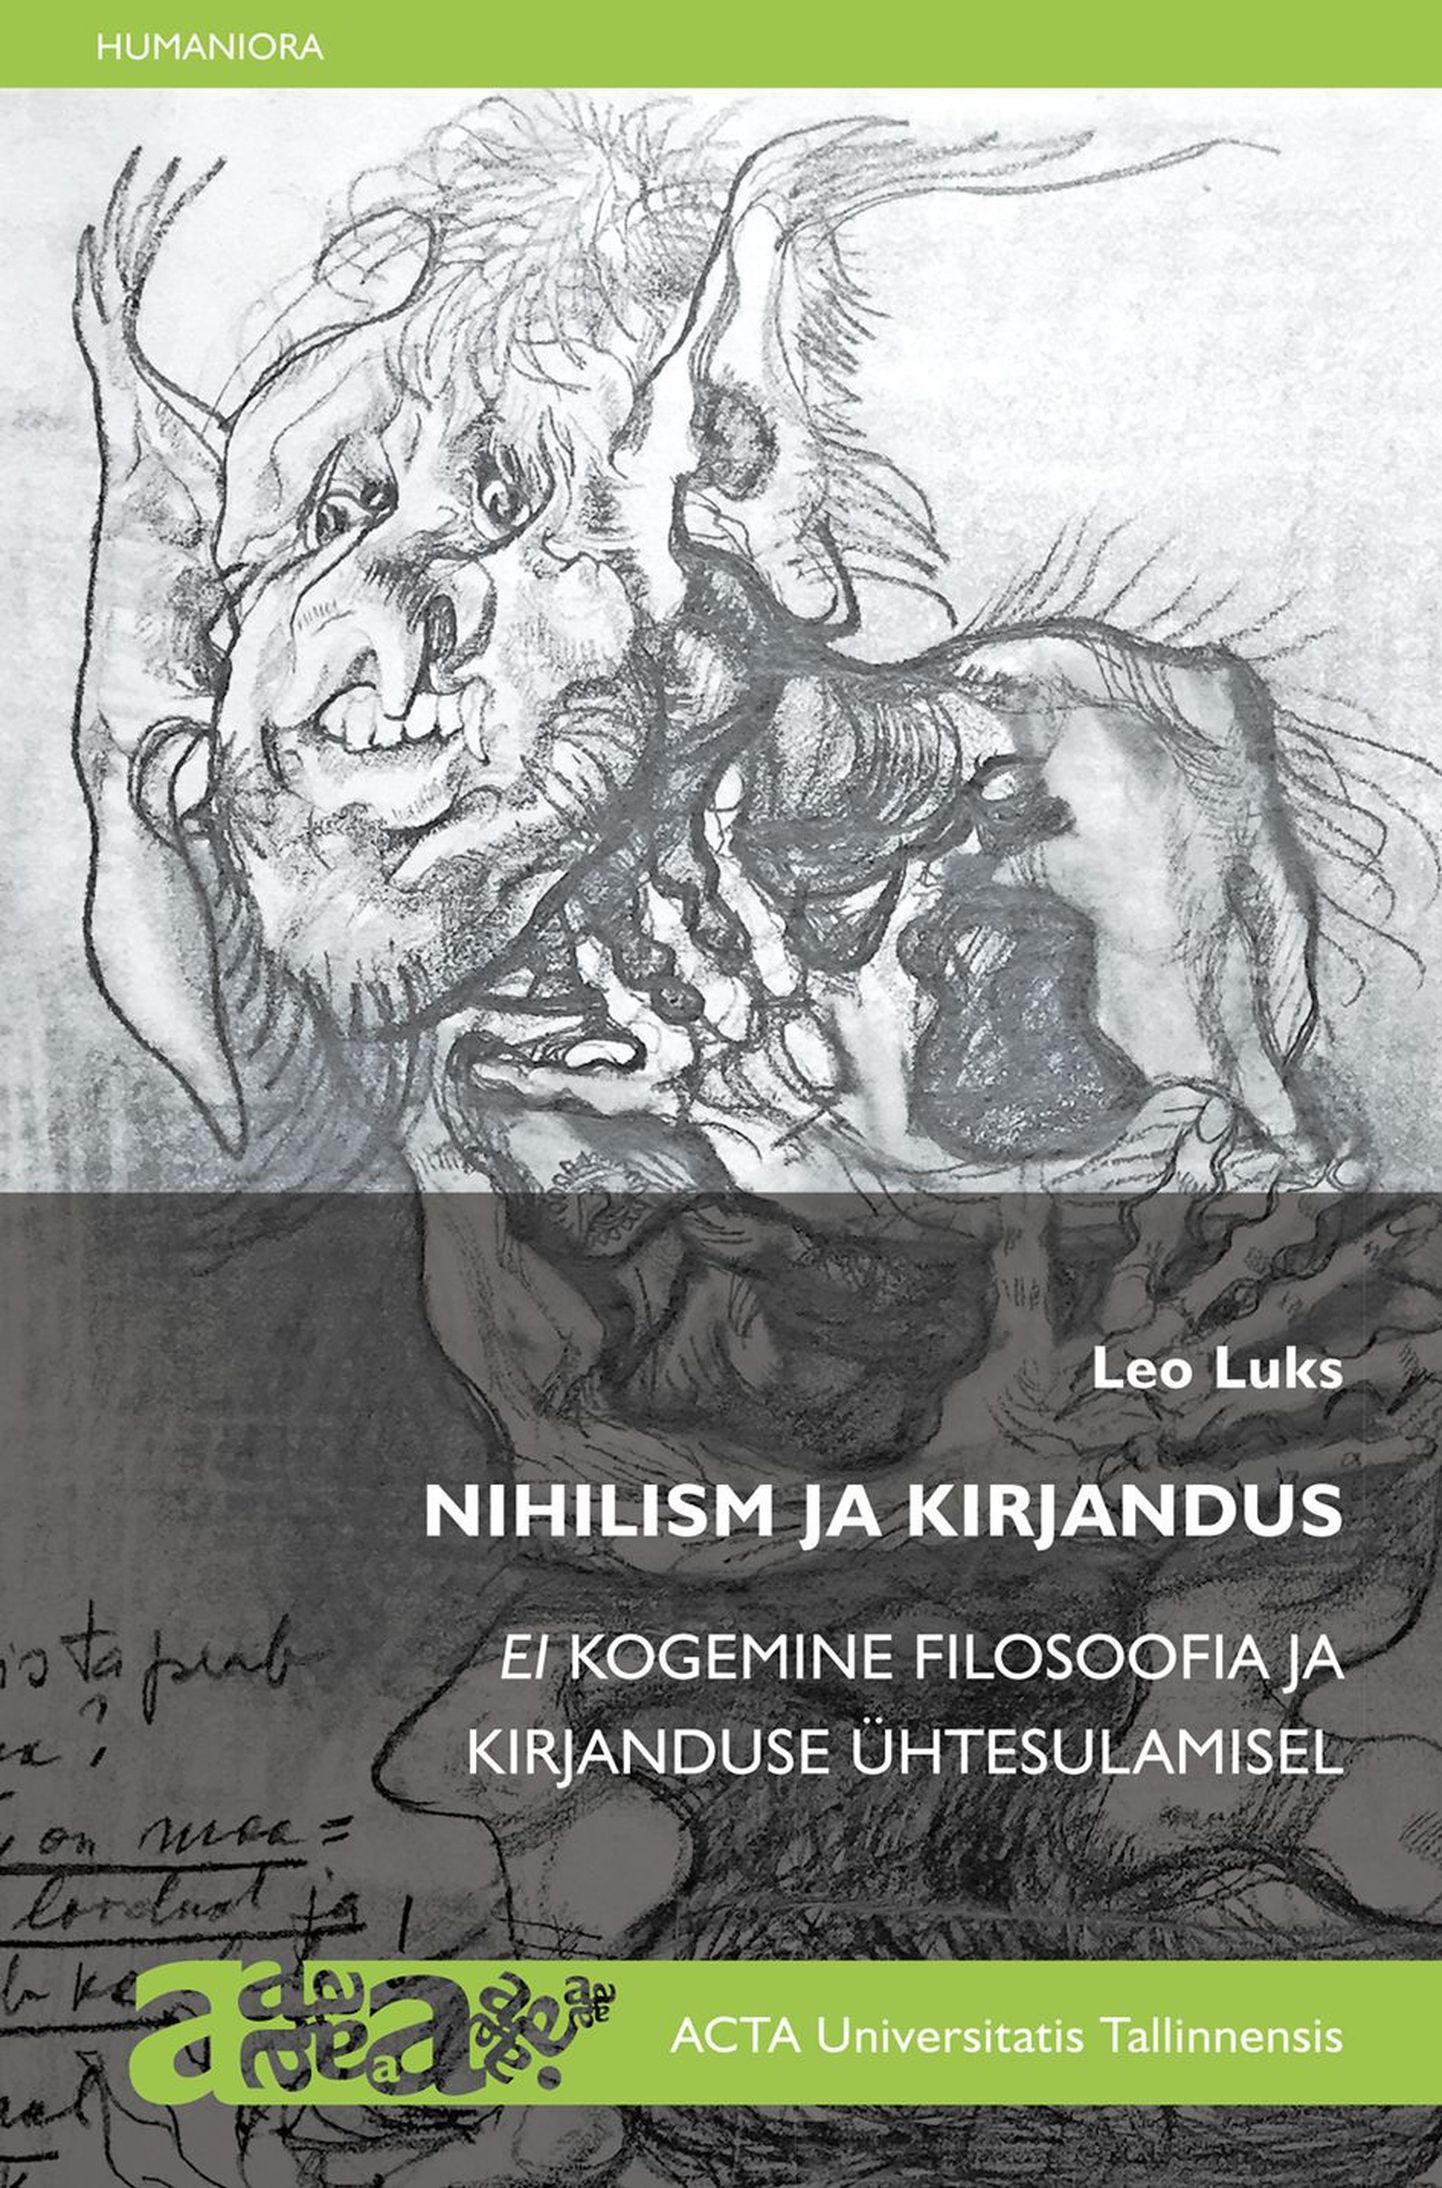 Leo Luks "Nihilism ja kirjandus"